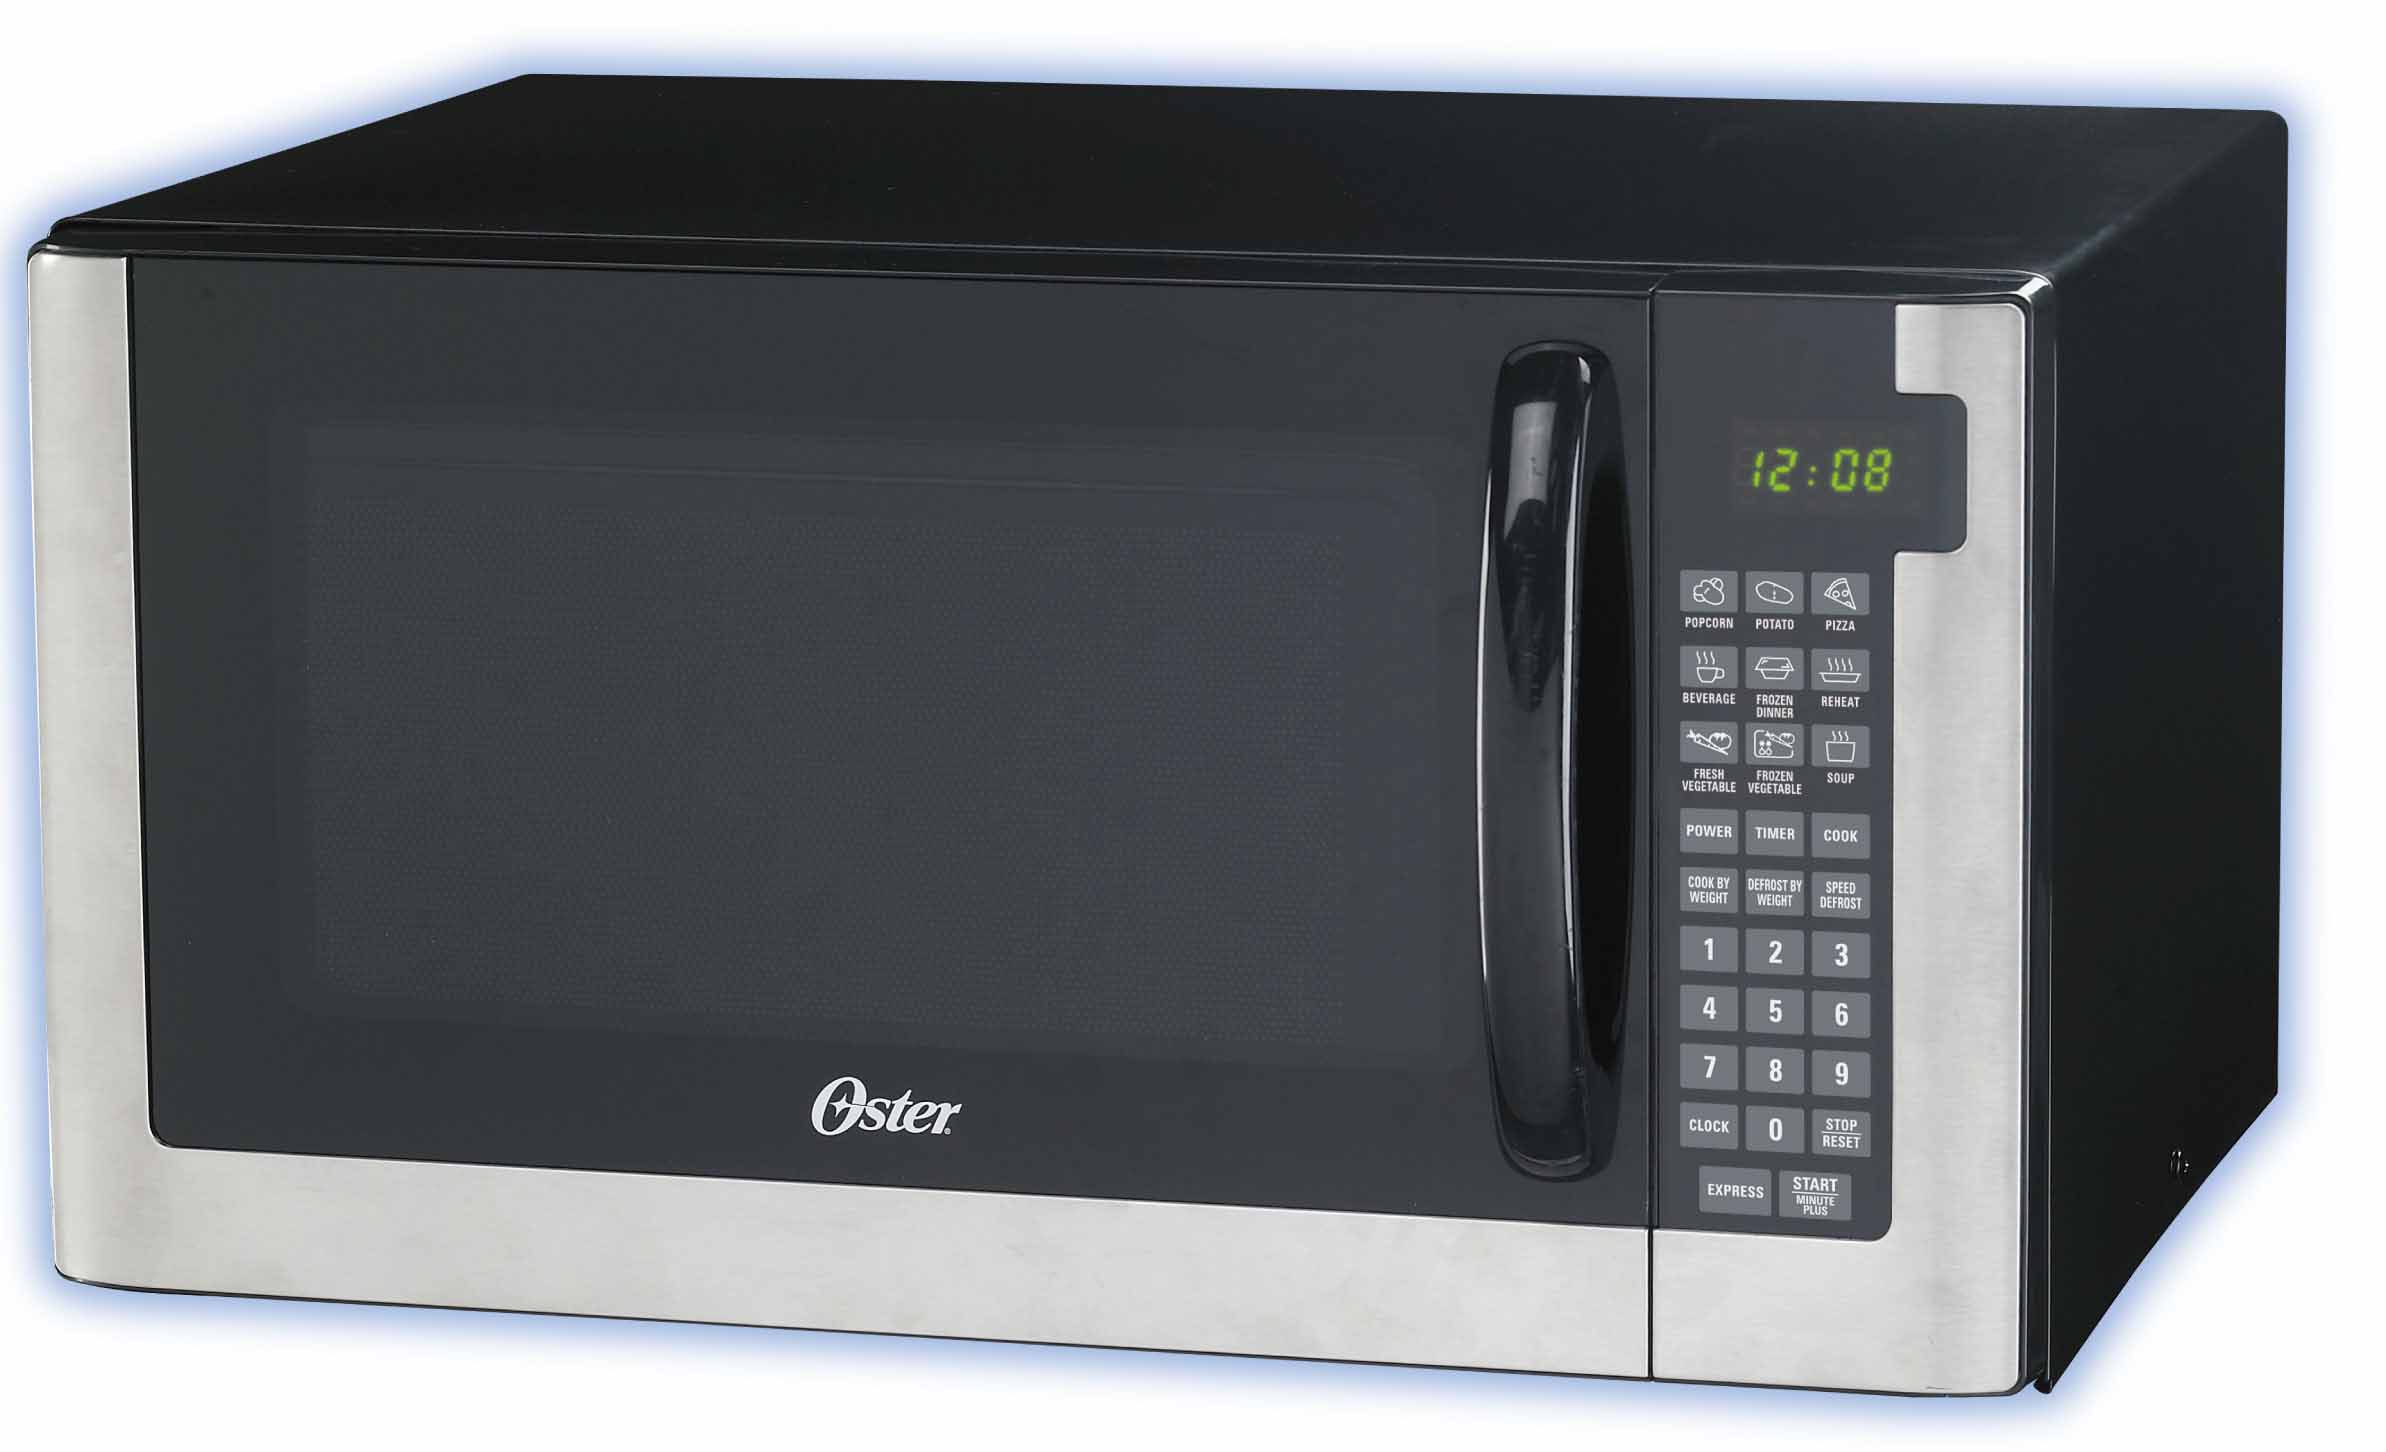 Buy Oster 1.6 Cu. Ft. 1100 Watt Microwave Oven - White OGR41603W